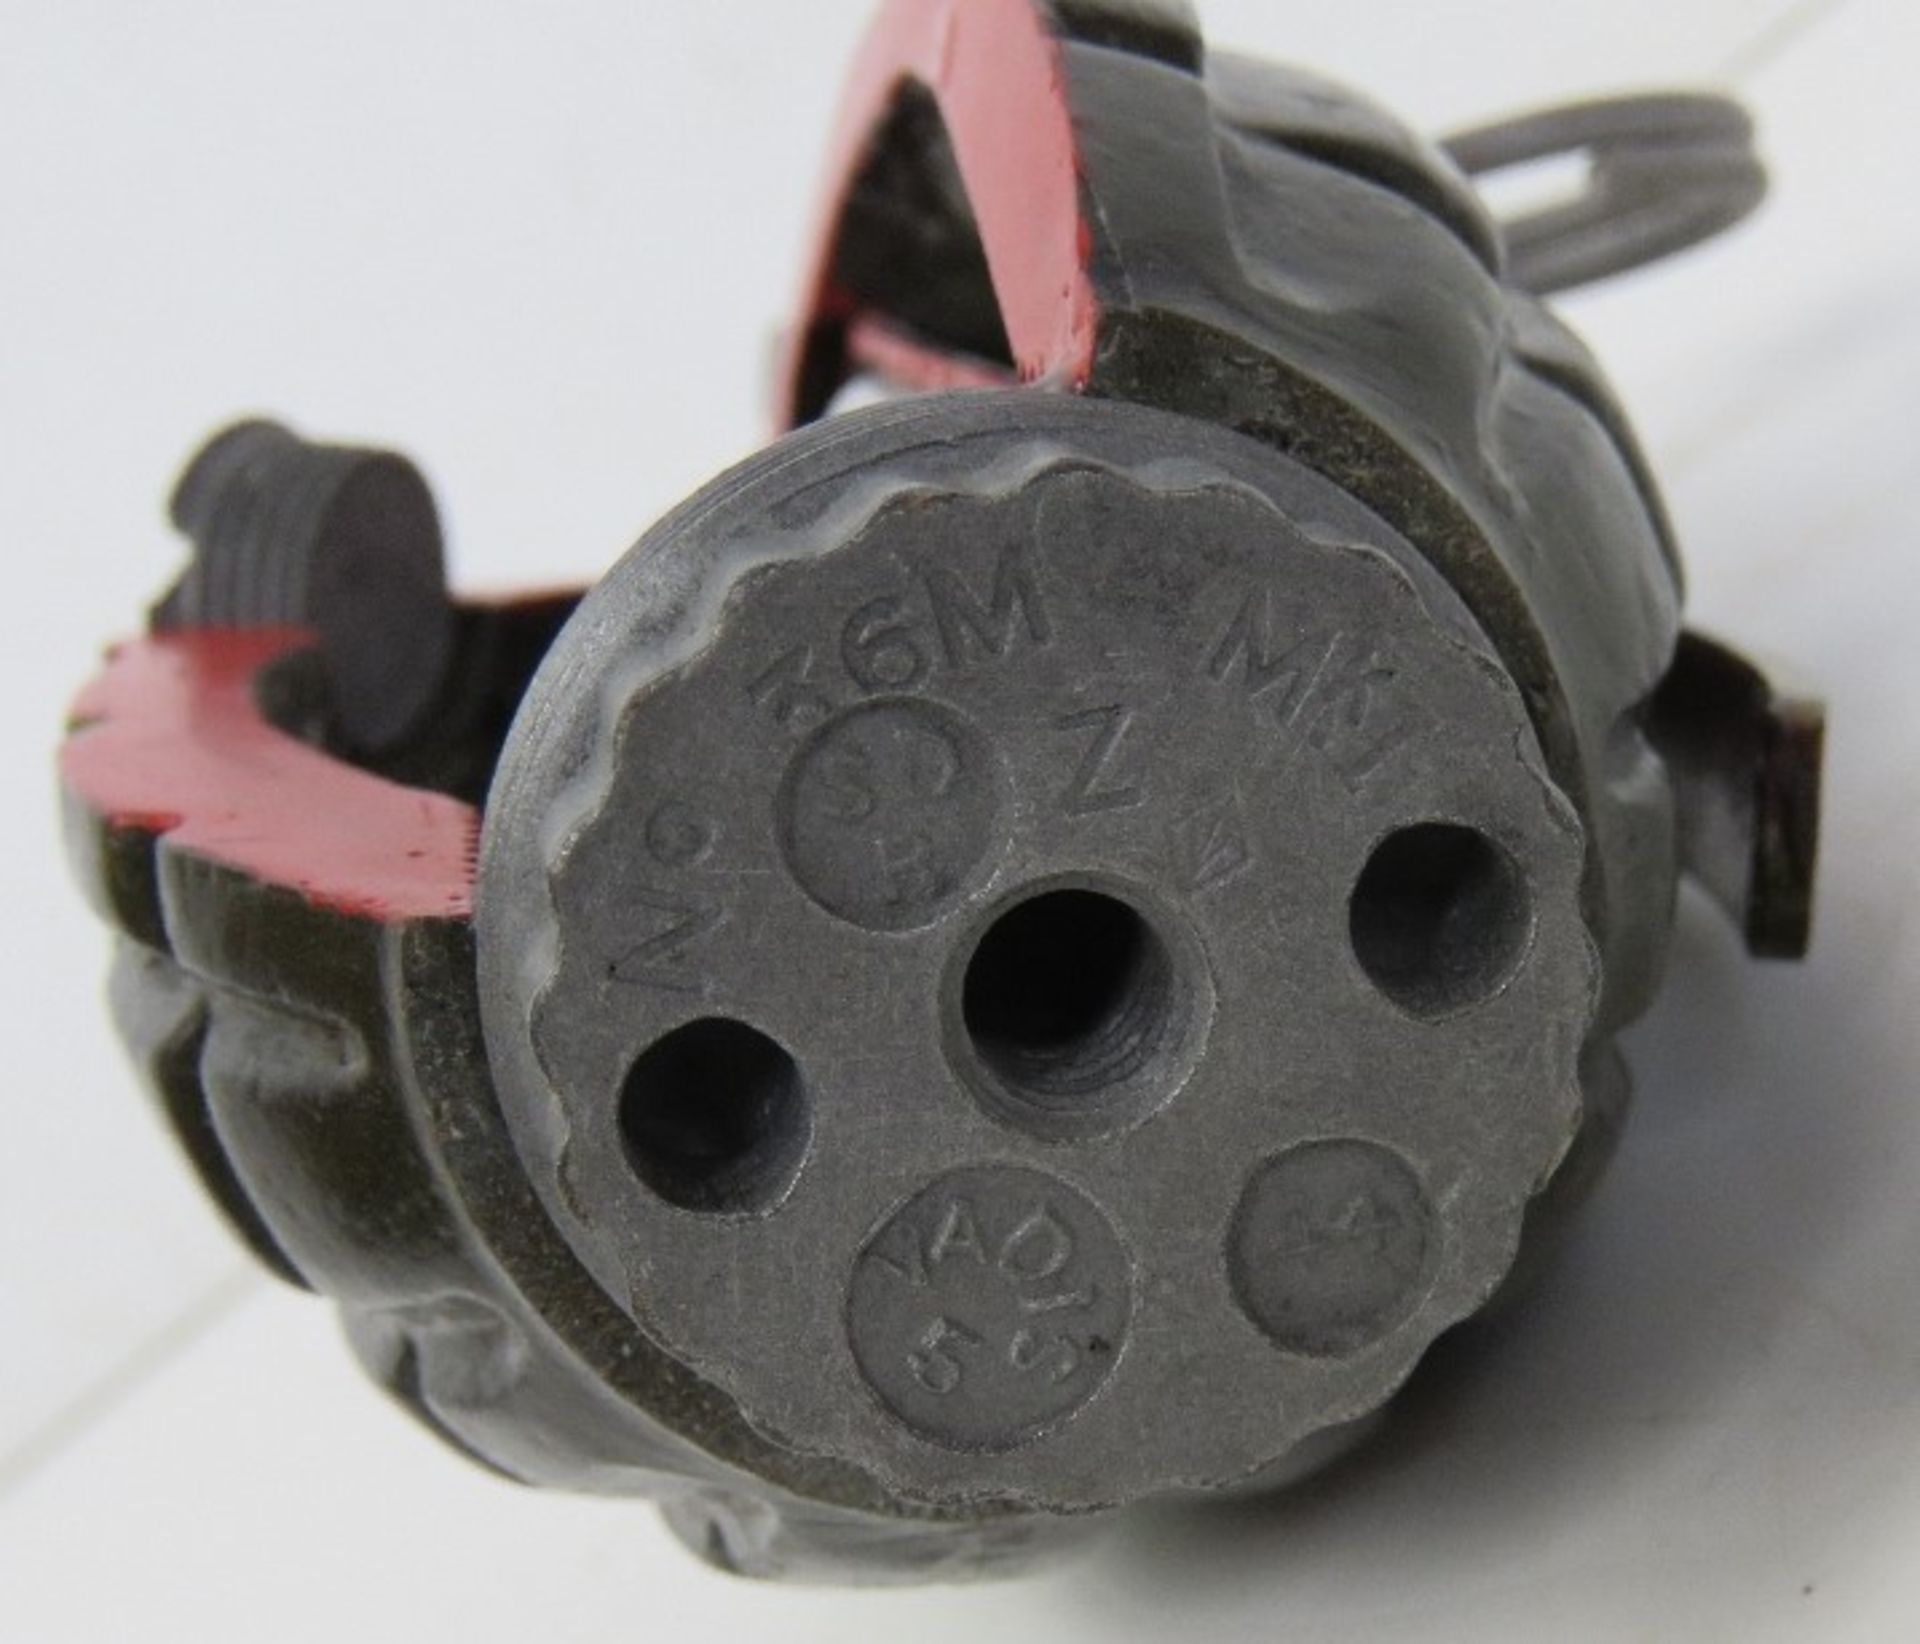 An inert resin No.36 Mills cutaway grenade. - Image 3 of 4